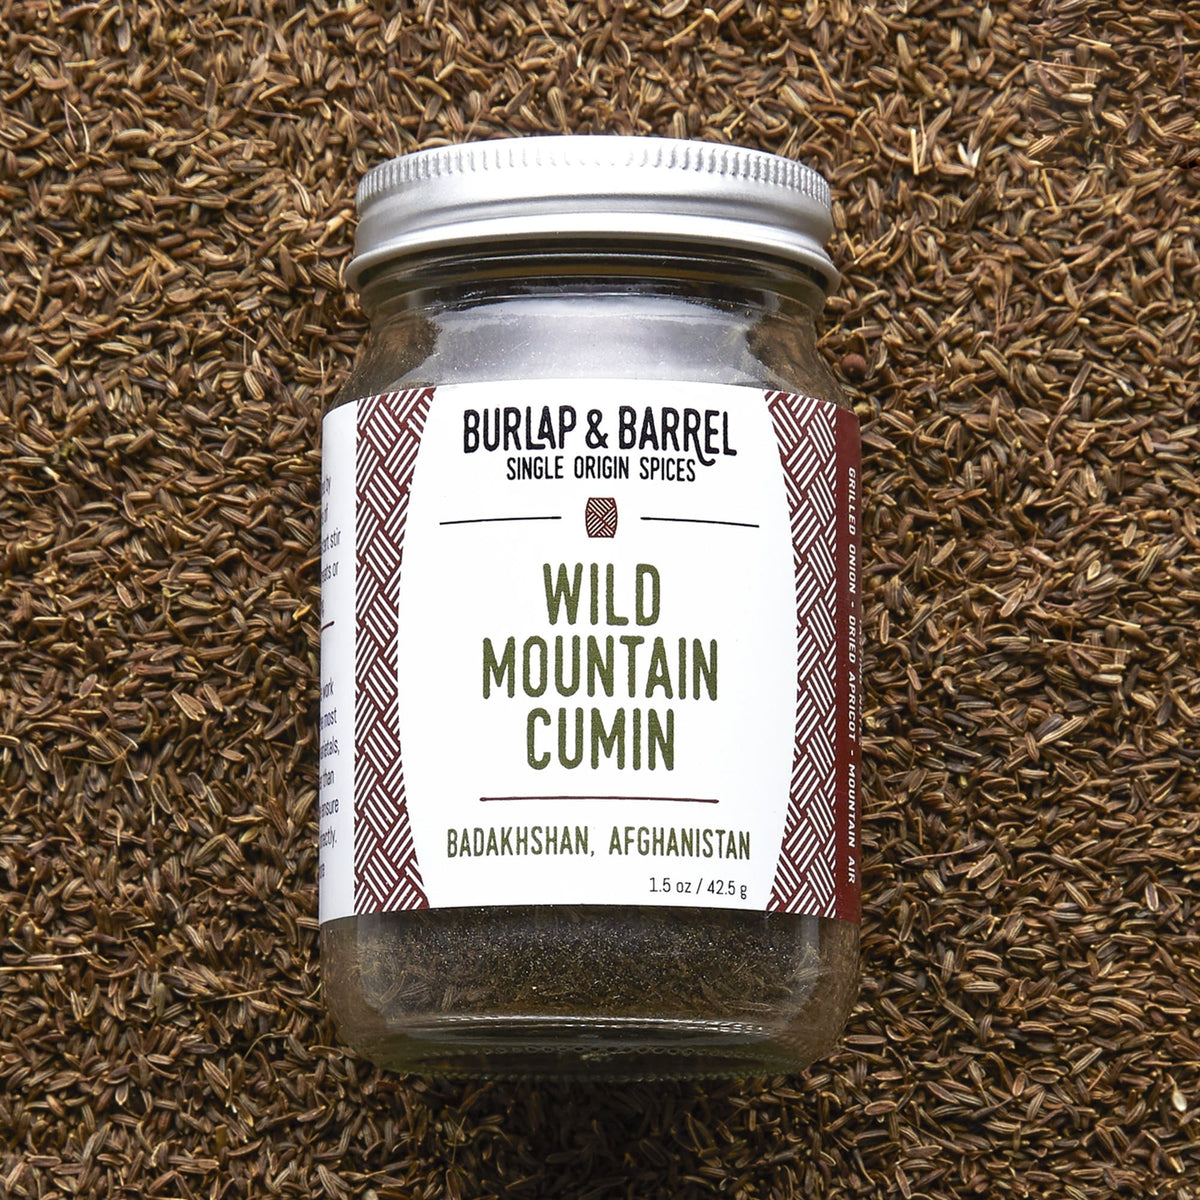 Wild Mountain Cumin - Burlap & Barrel Single Origin Spices